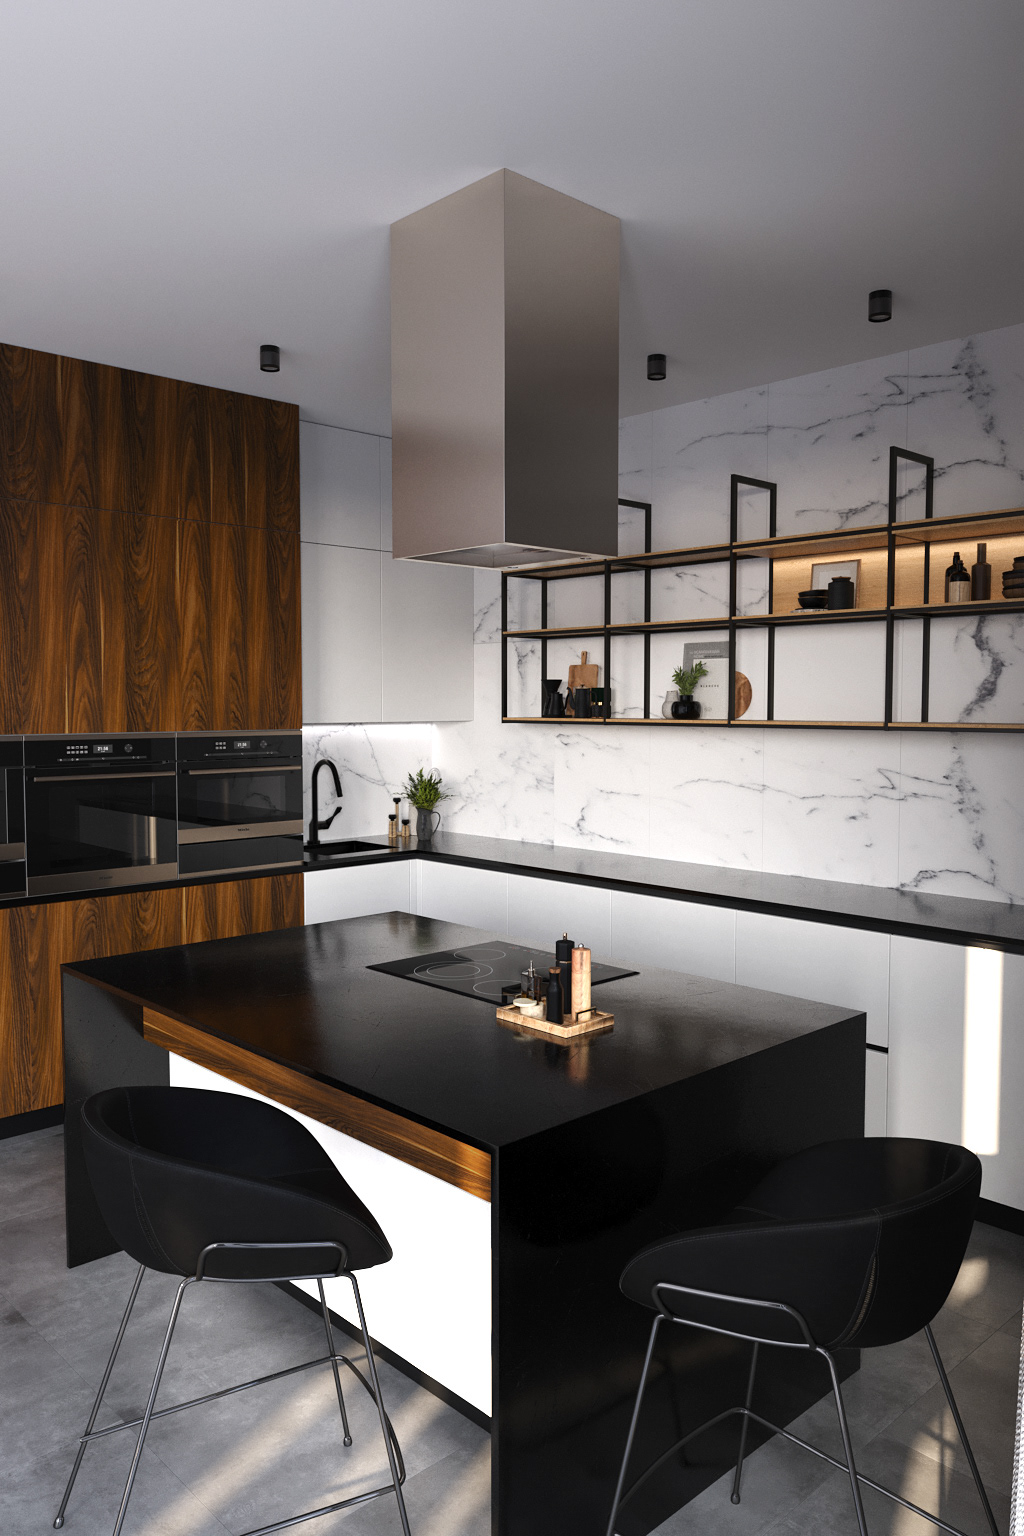 visualization kitchen design kitchendesign furniture design  FURNISHING Render archviz 3D kitchen interior wooden fronts